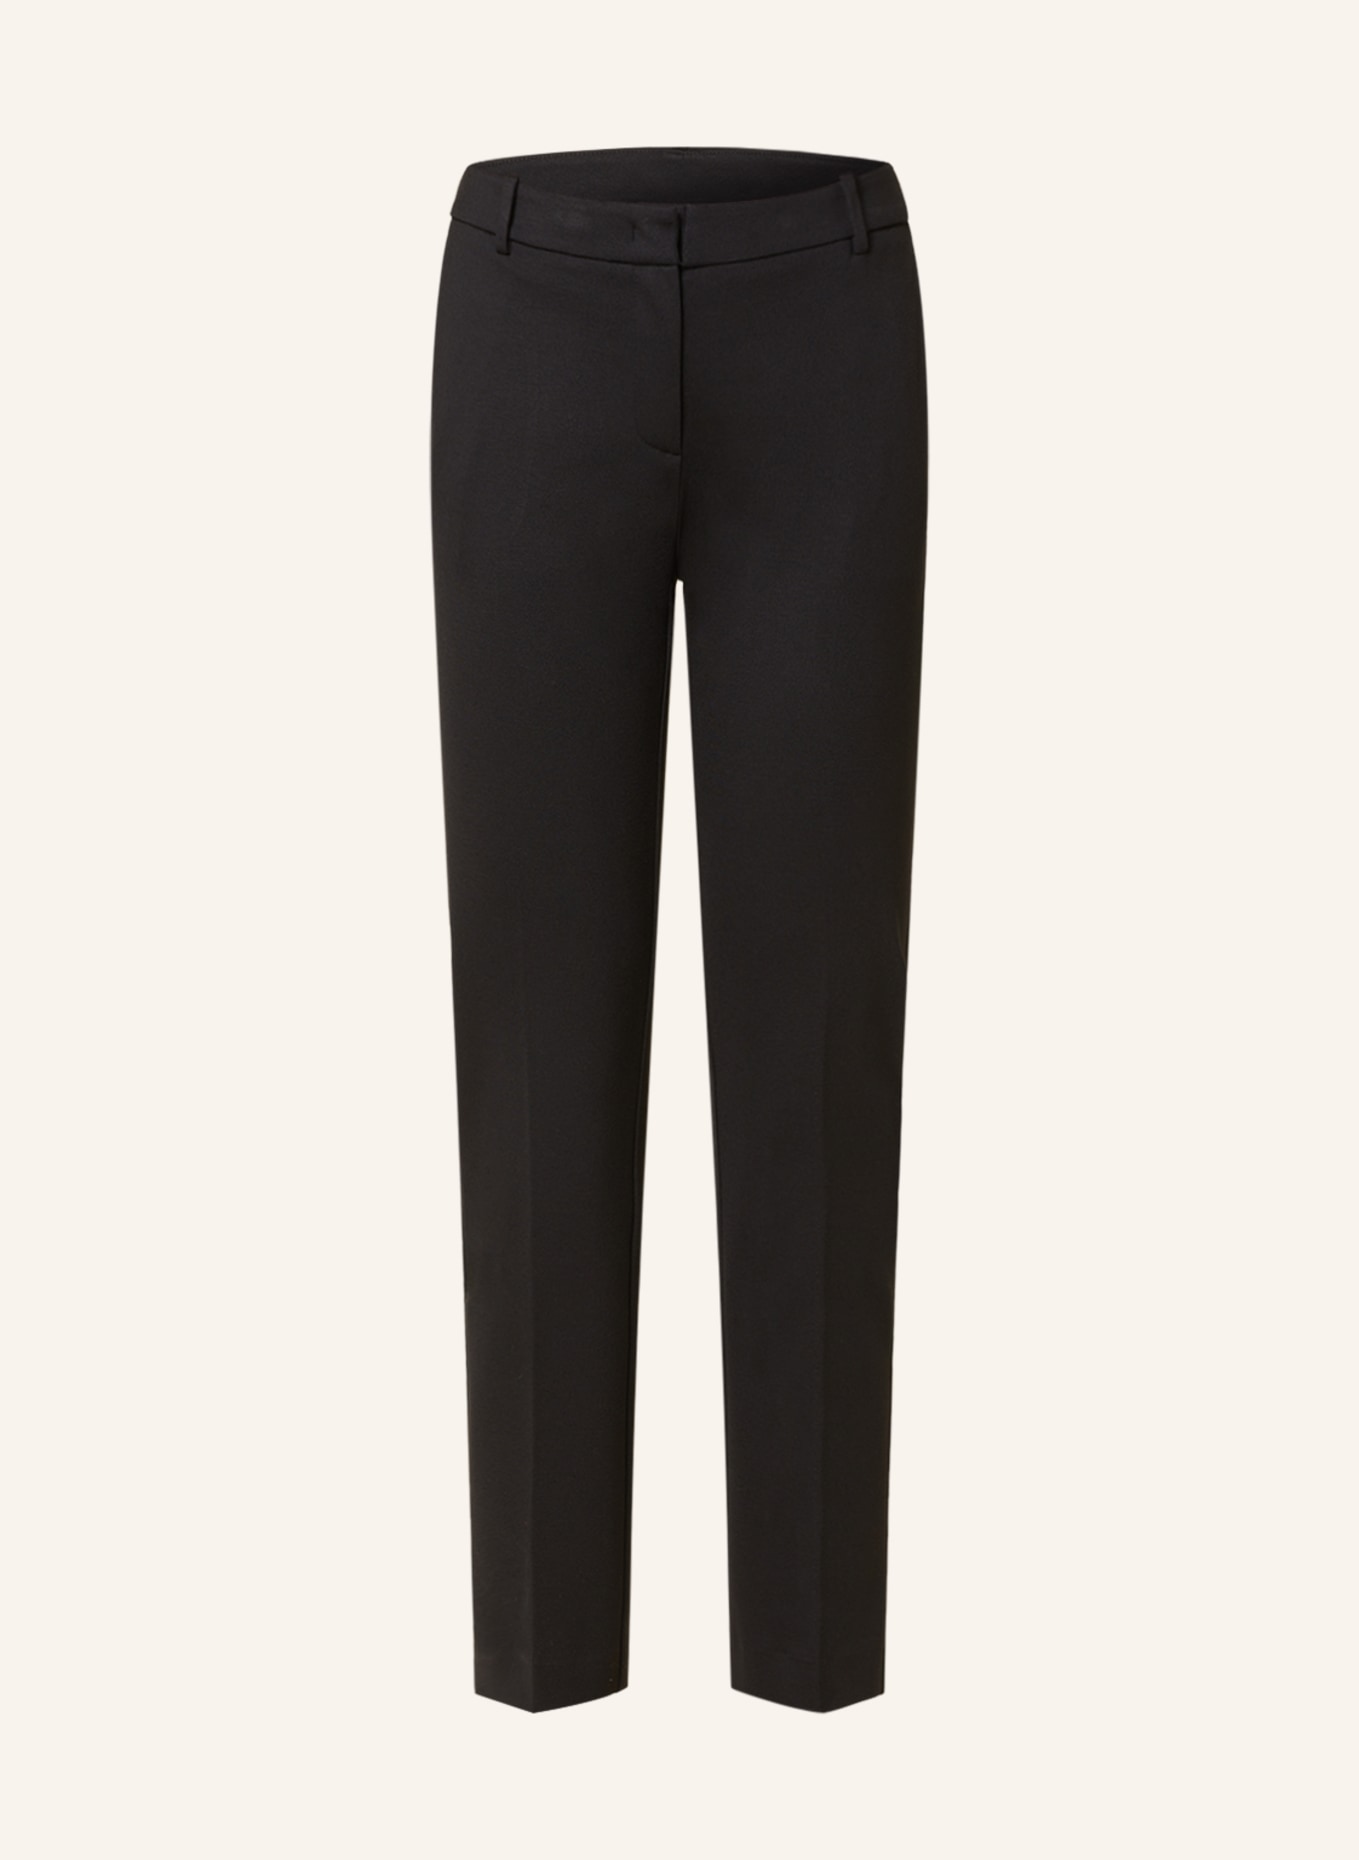 Kiltie Jersey pants, Color: BLACK (Image 1)